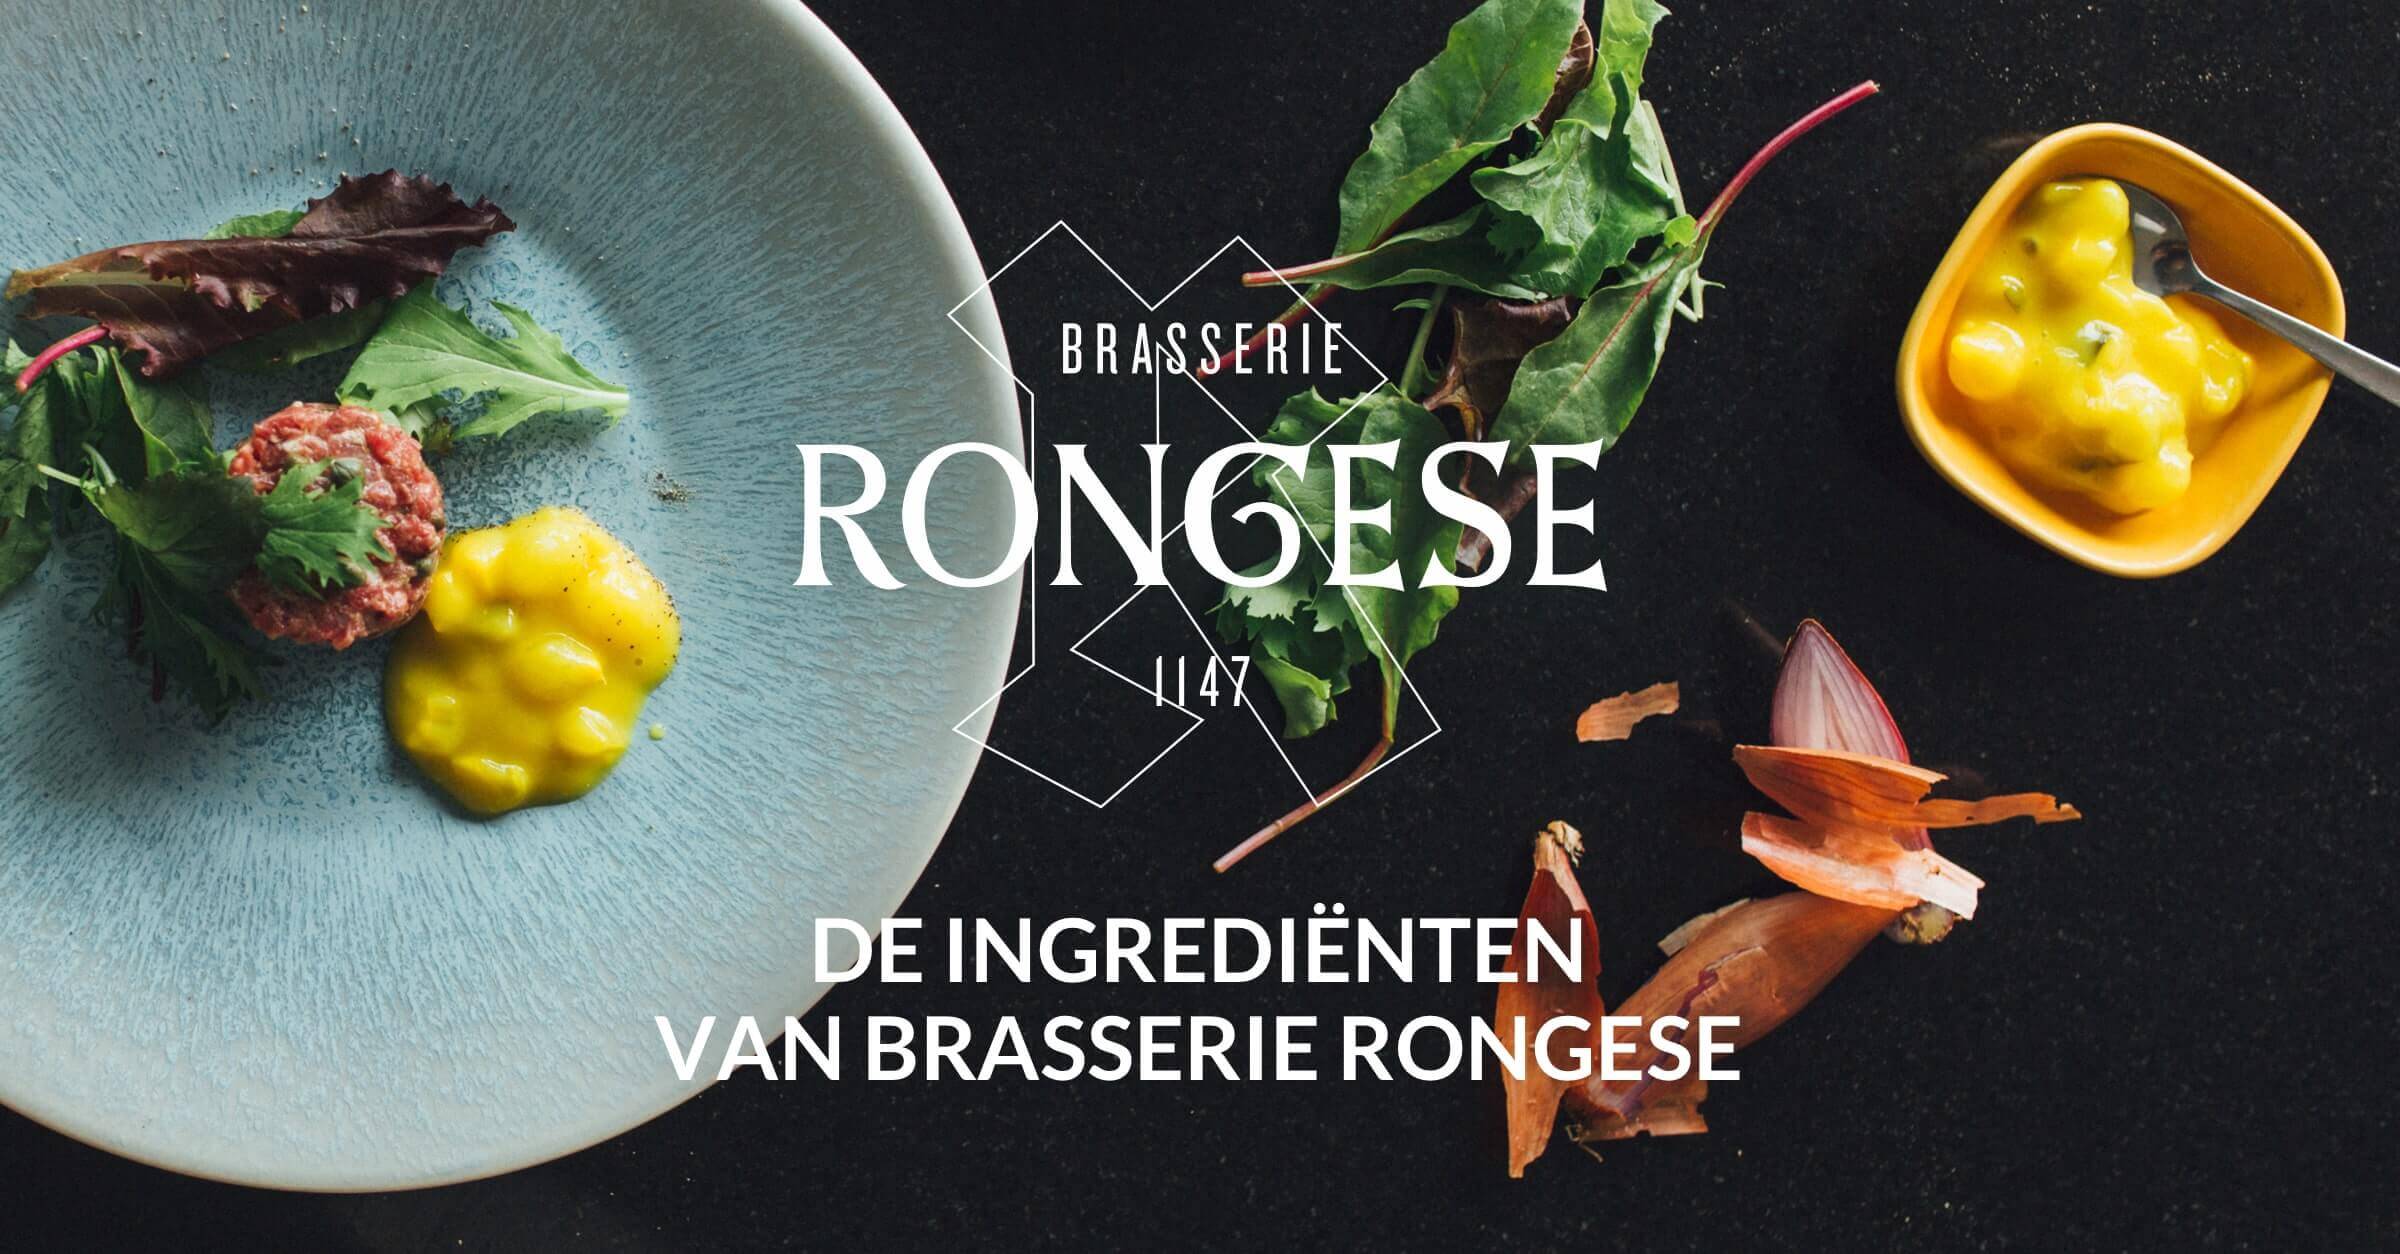 Brasserie Rongese Vlaamse Klassiekers